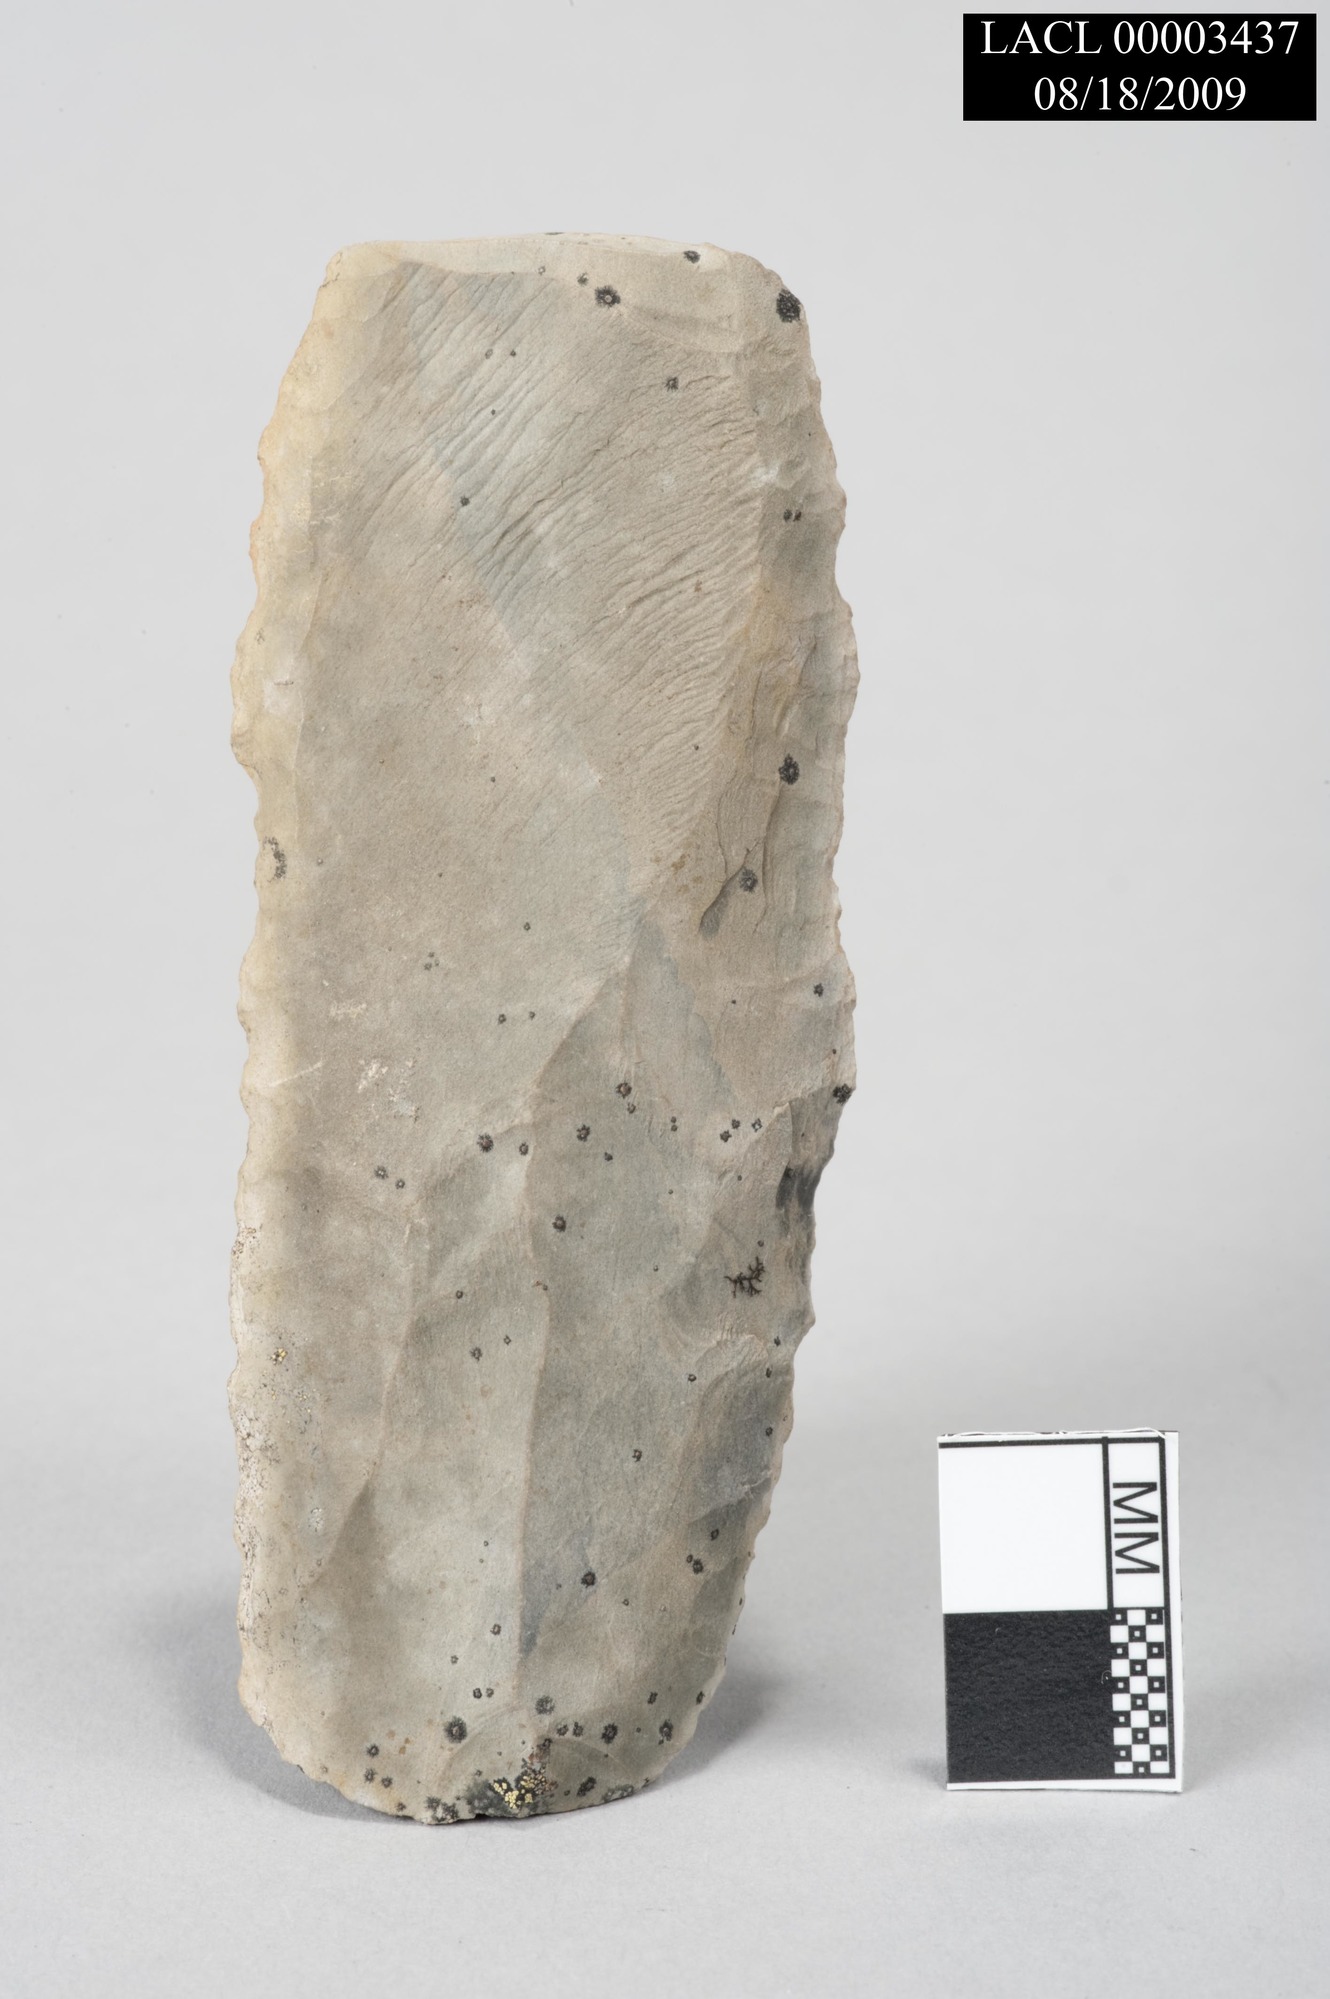 Image of stone chert flake.